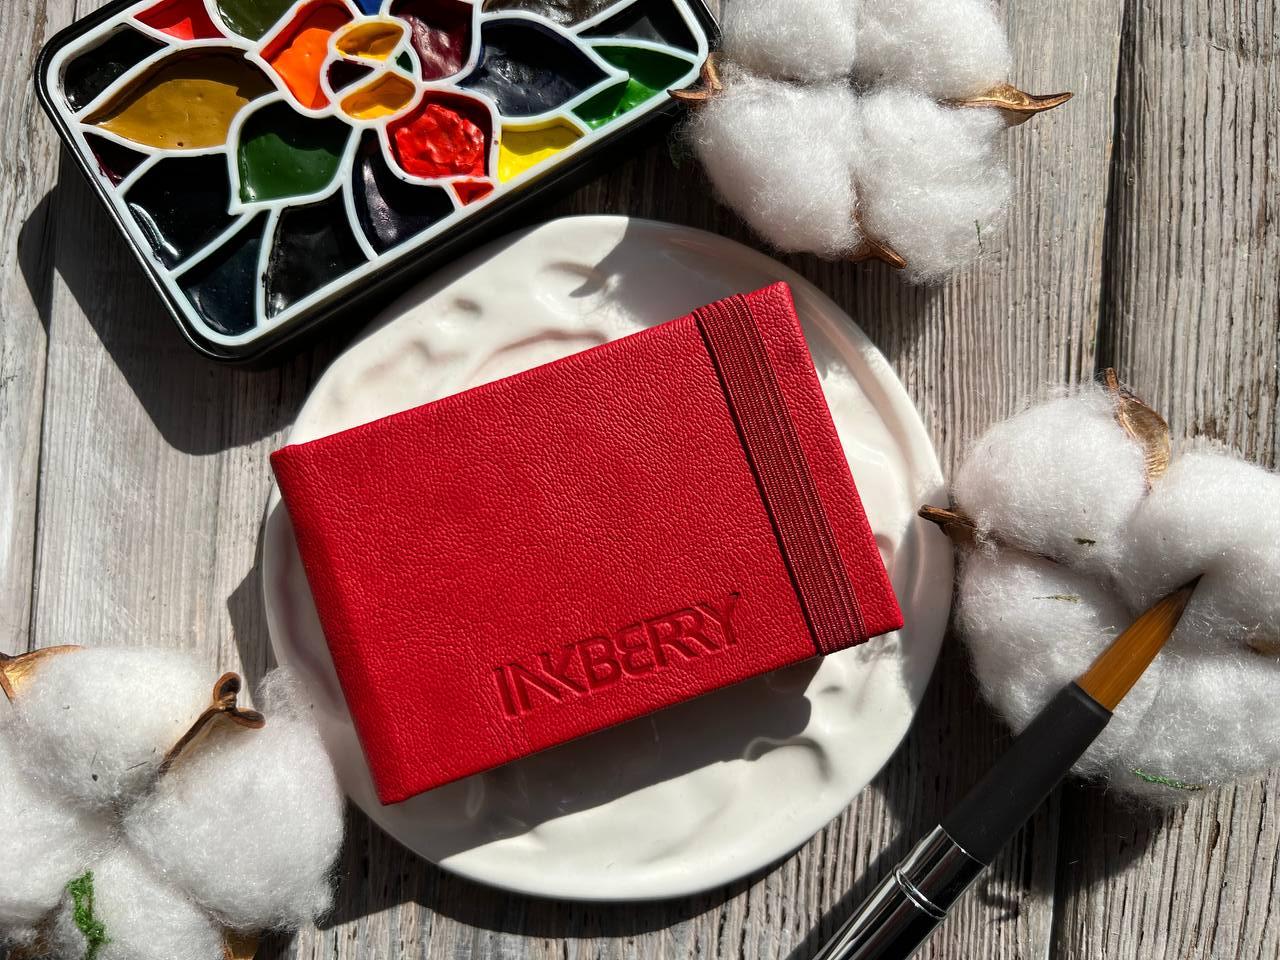 Скетчбук для акварели Inkberry 5х8 см 230 г 50% хлопка, красный книжная лавка грёз